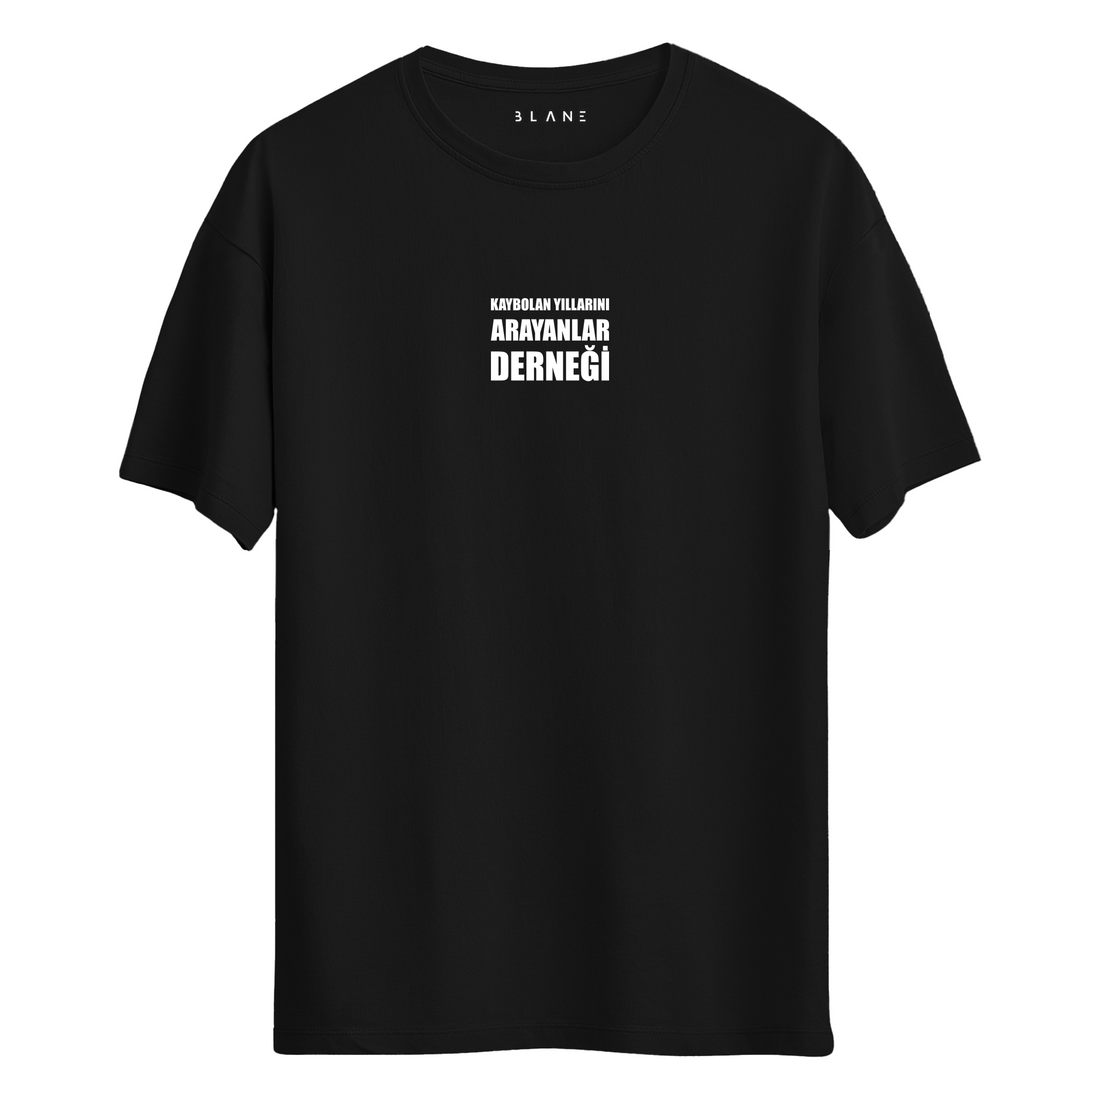 Kaybolan Yıllarını Arayanlar Derneği - T-Shirt